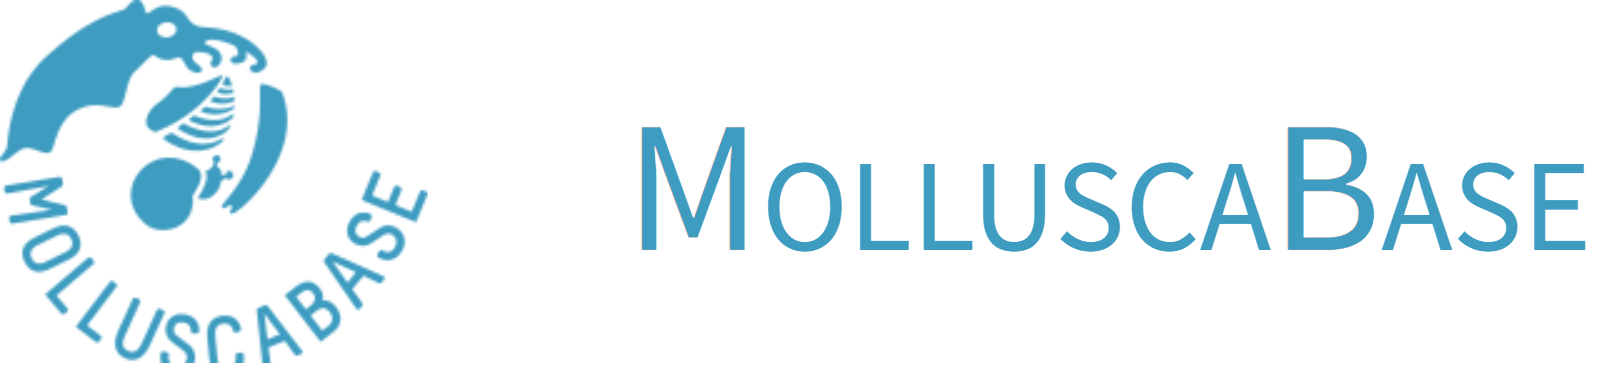 Molluscabase banner